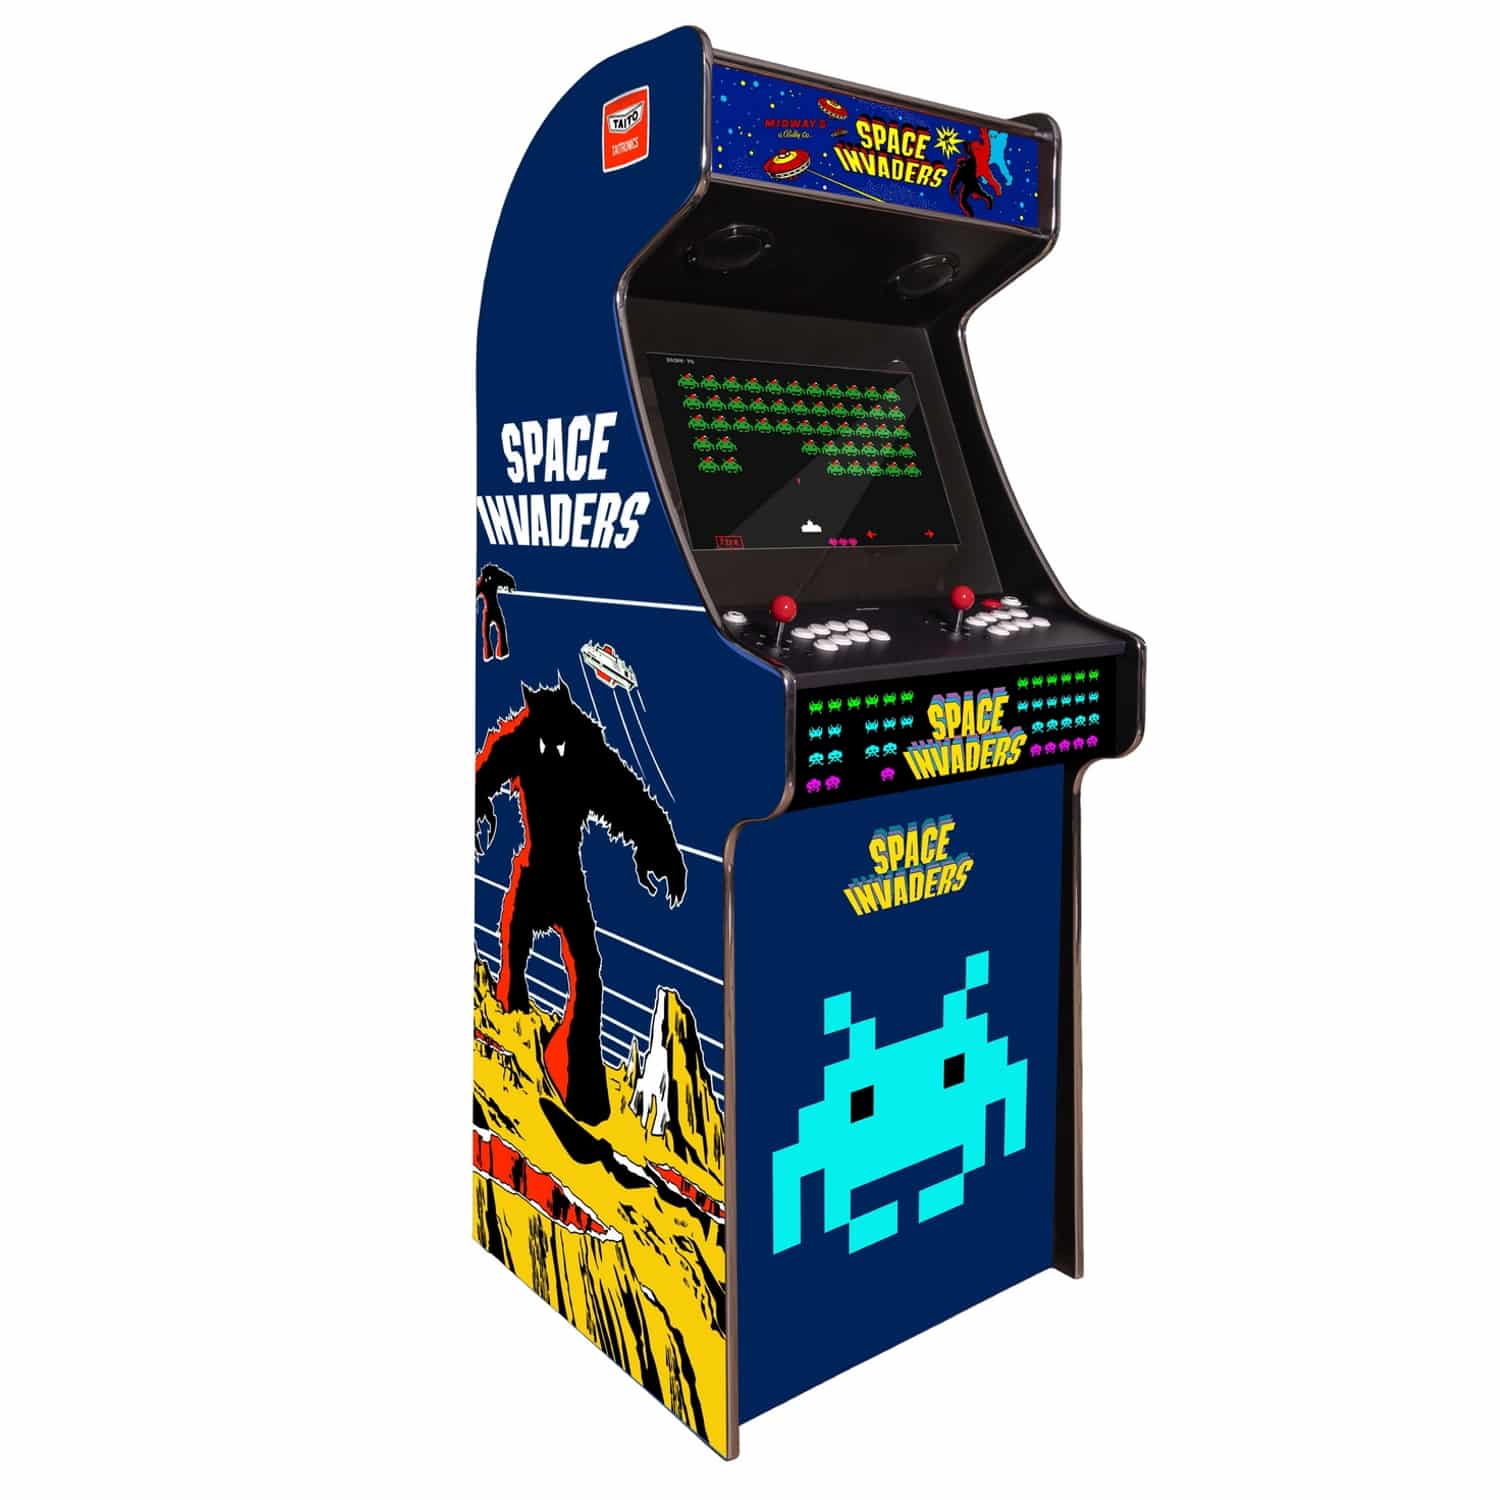 arcade-machine-borne-born-jeux-cafe-anciens-retro-recalbox-neuve-moderne-hdmi-pas-cher-vente-achat-prix-france-belgique-spaceinvaders